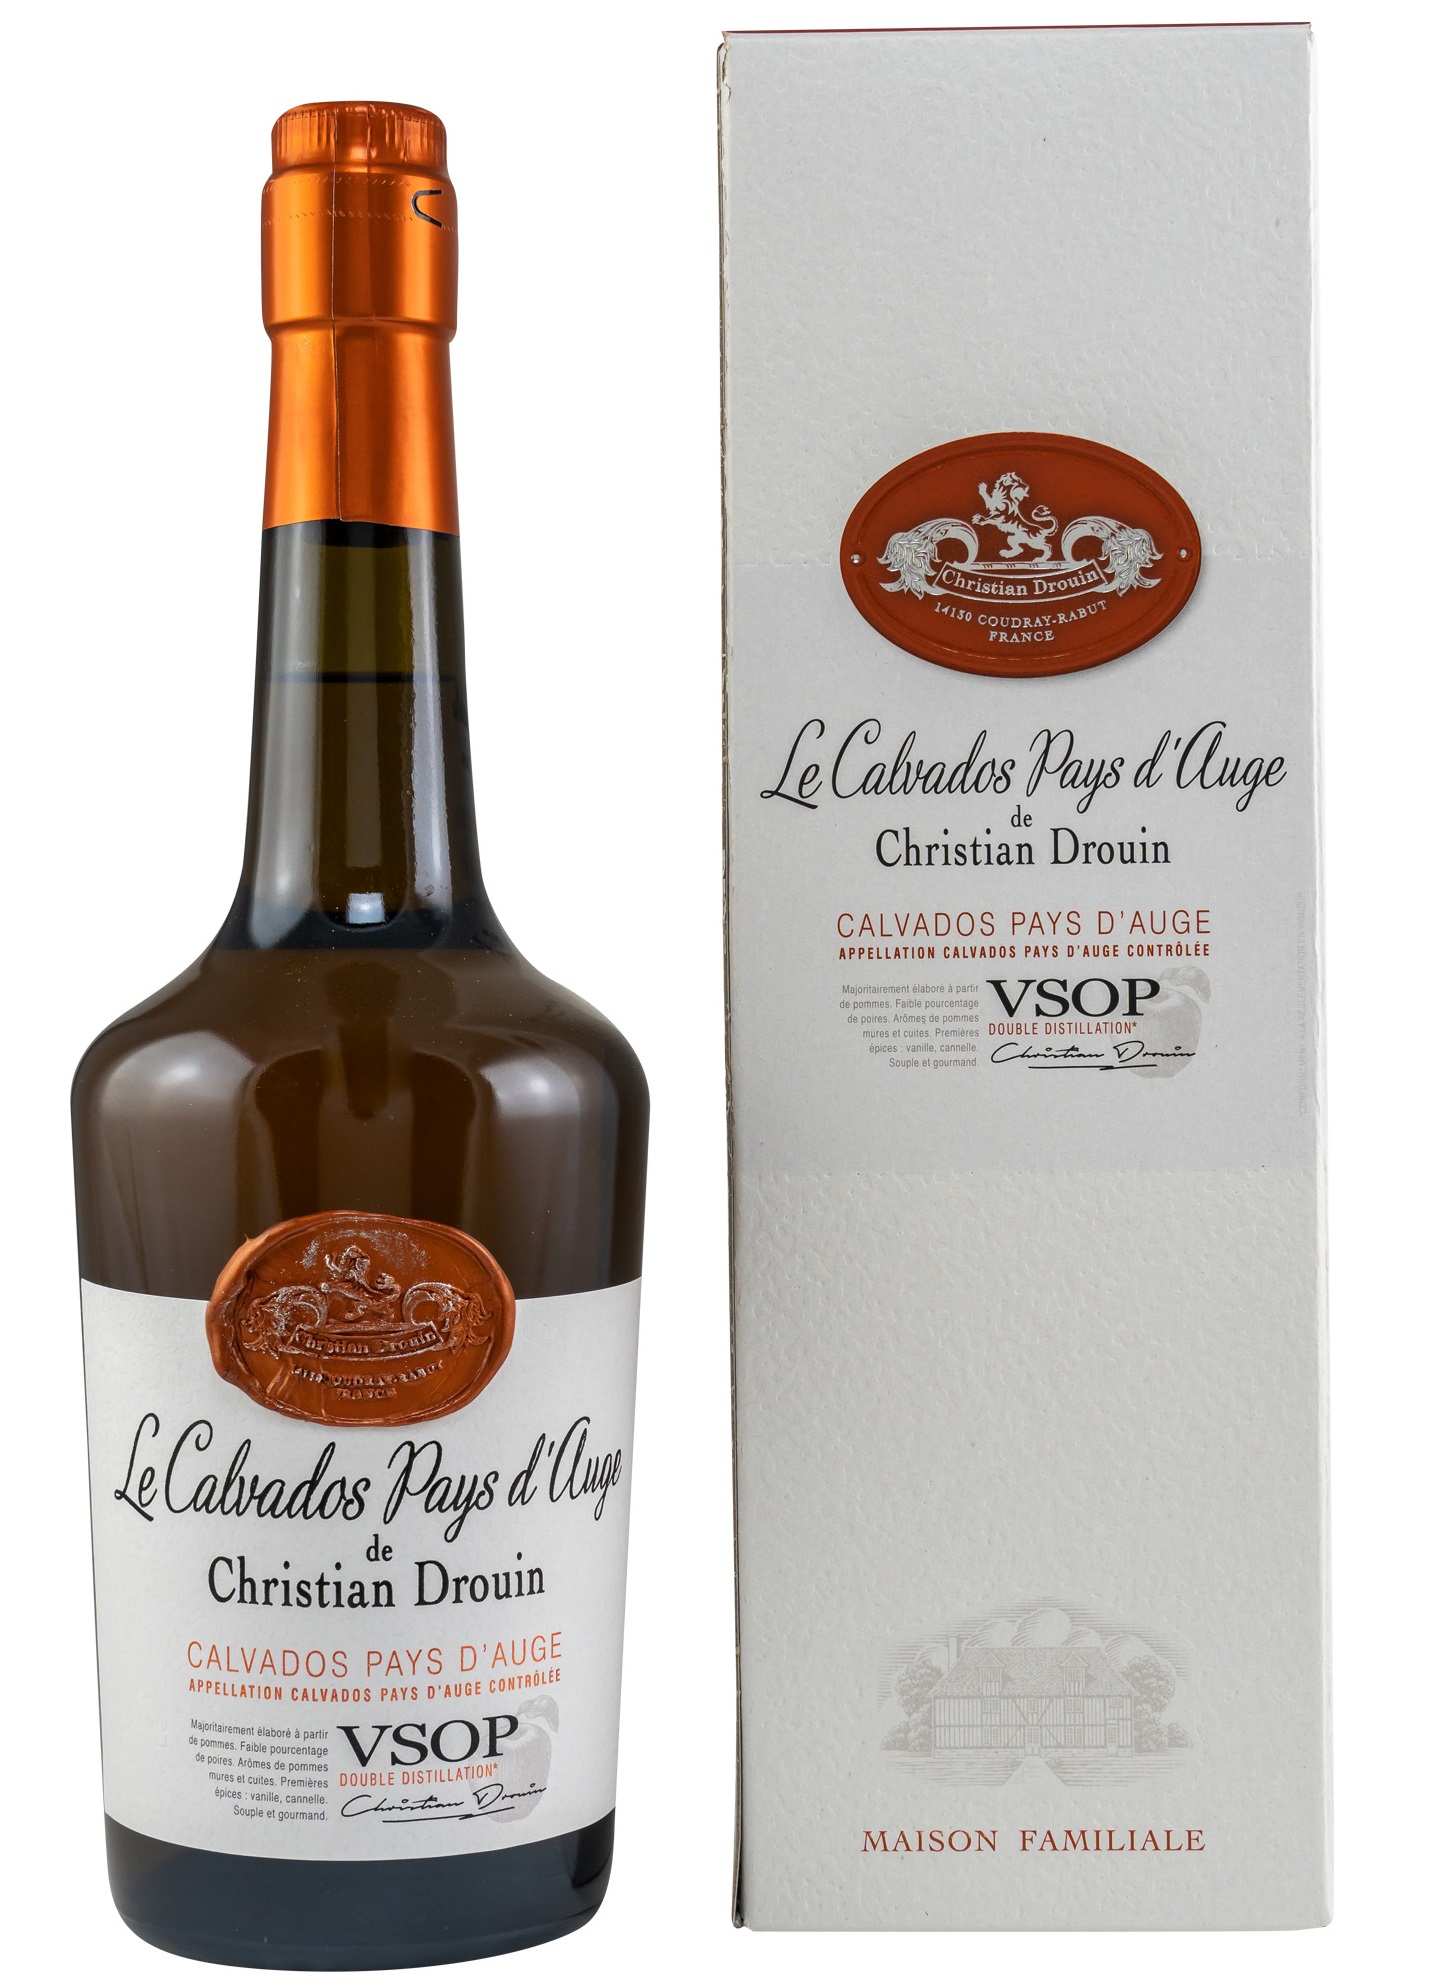 Christian Drouin VSOP Pale & Dry Calvados Pays D'Auge 40.0% 0,7l